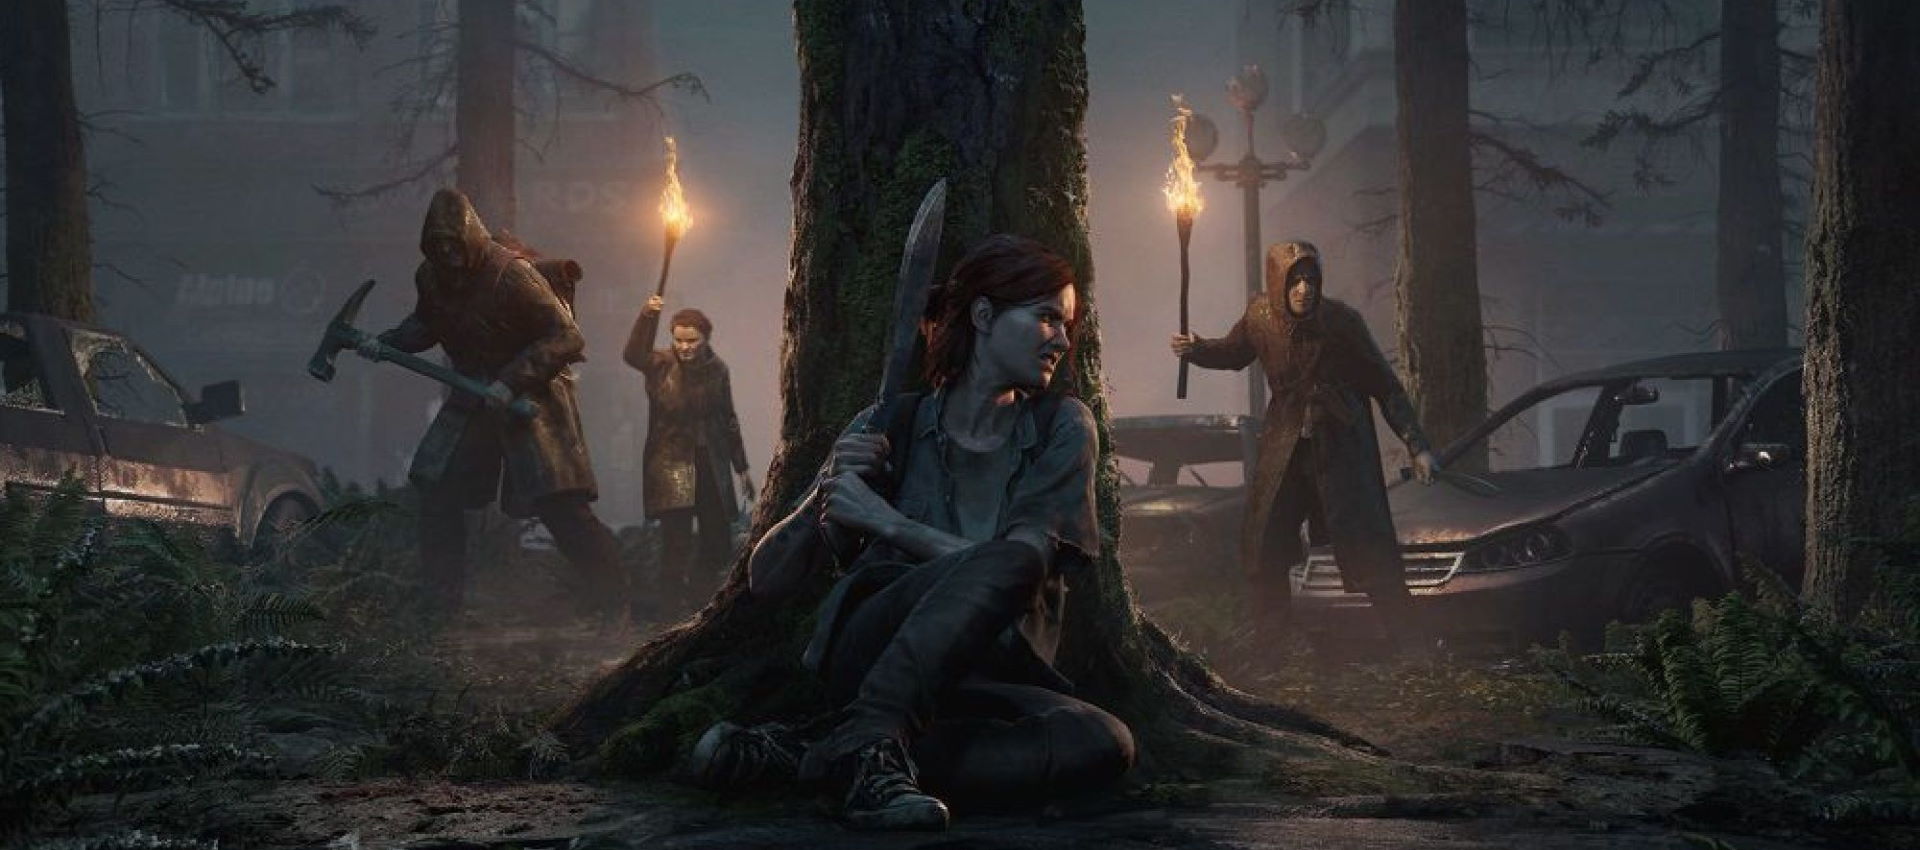 ۷ بازی جذابی که حال و هوایی شبیه به The Last of Us دارند